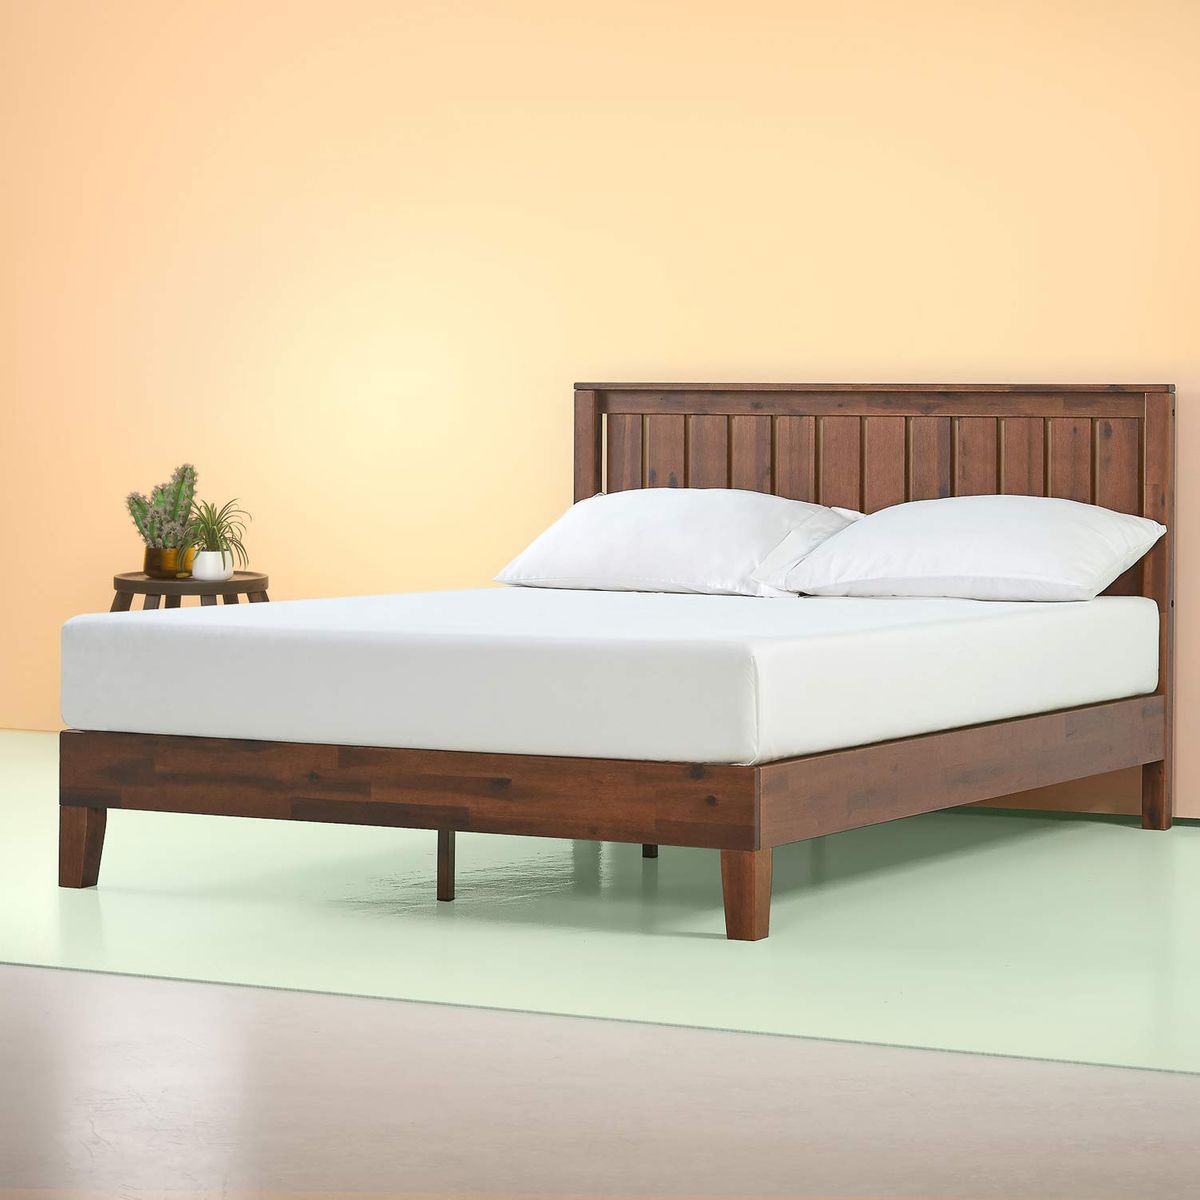 21 Best Platform Beds 2021 The Strategist, Simple Wooden Bed Frame Designs